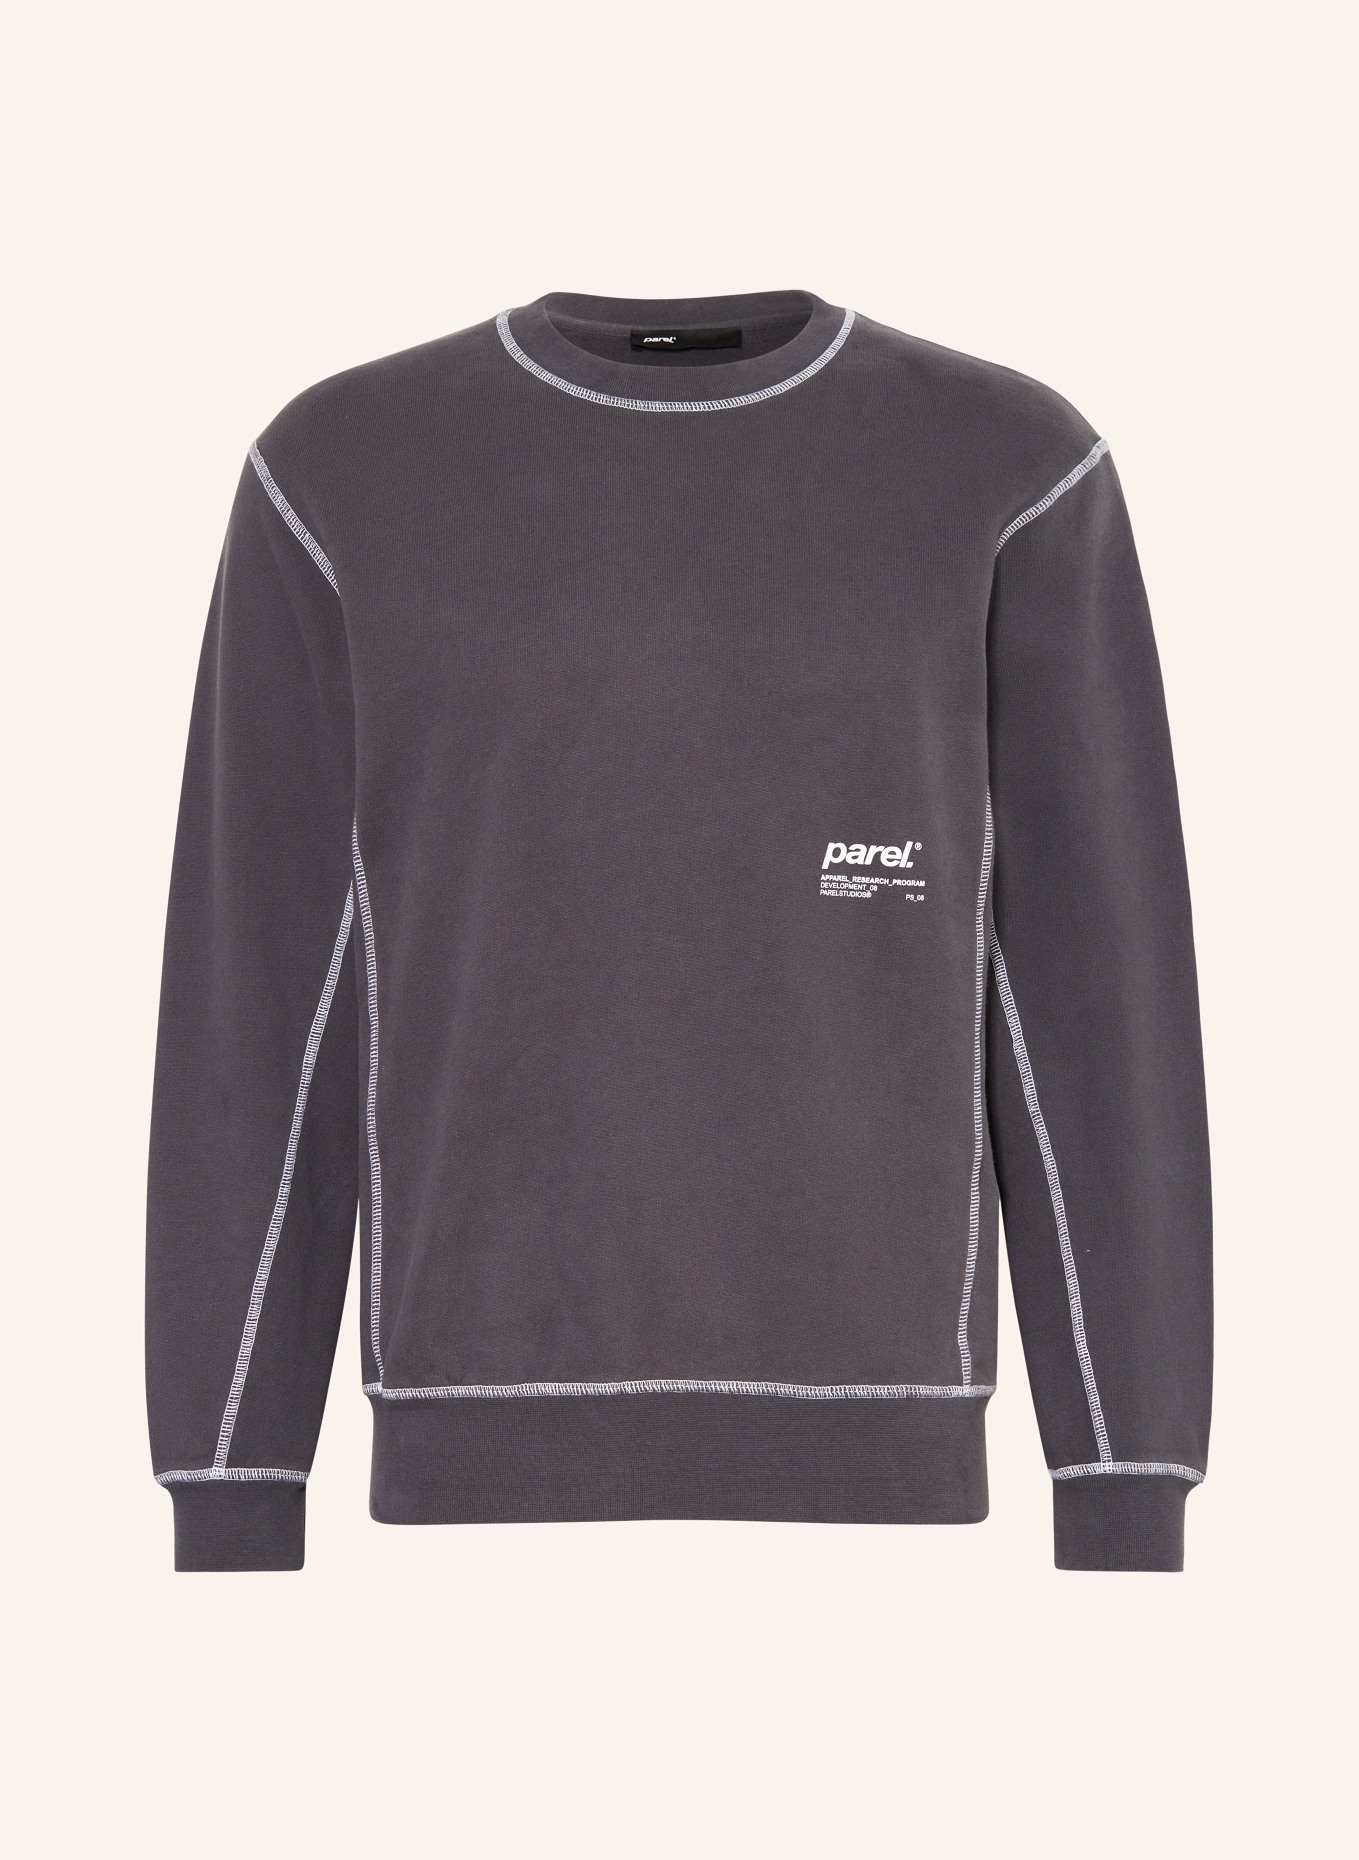 parel. Sweatshirt, Color: DARK GRAY (Image 1)